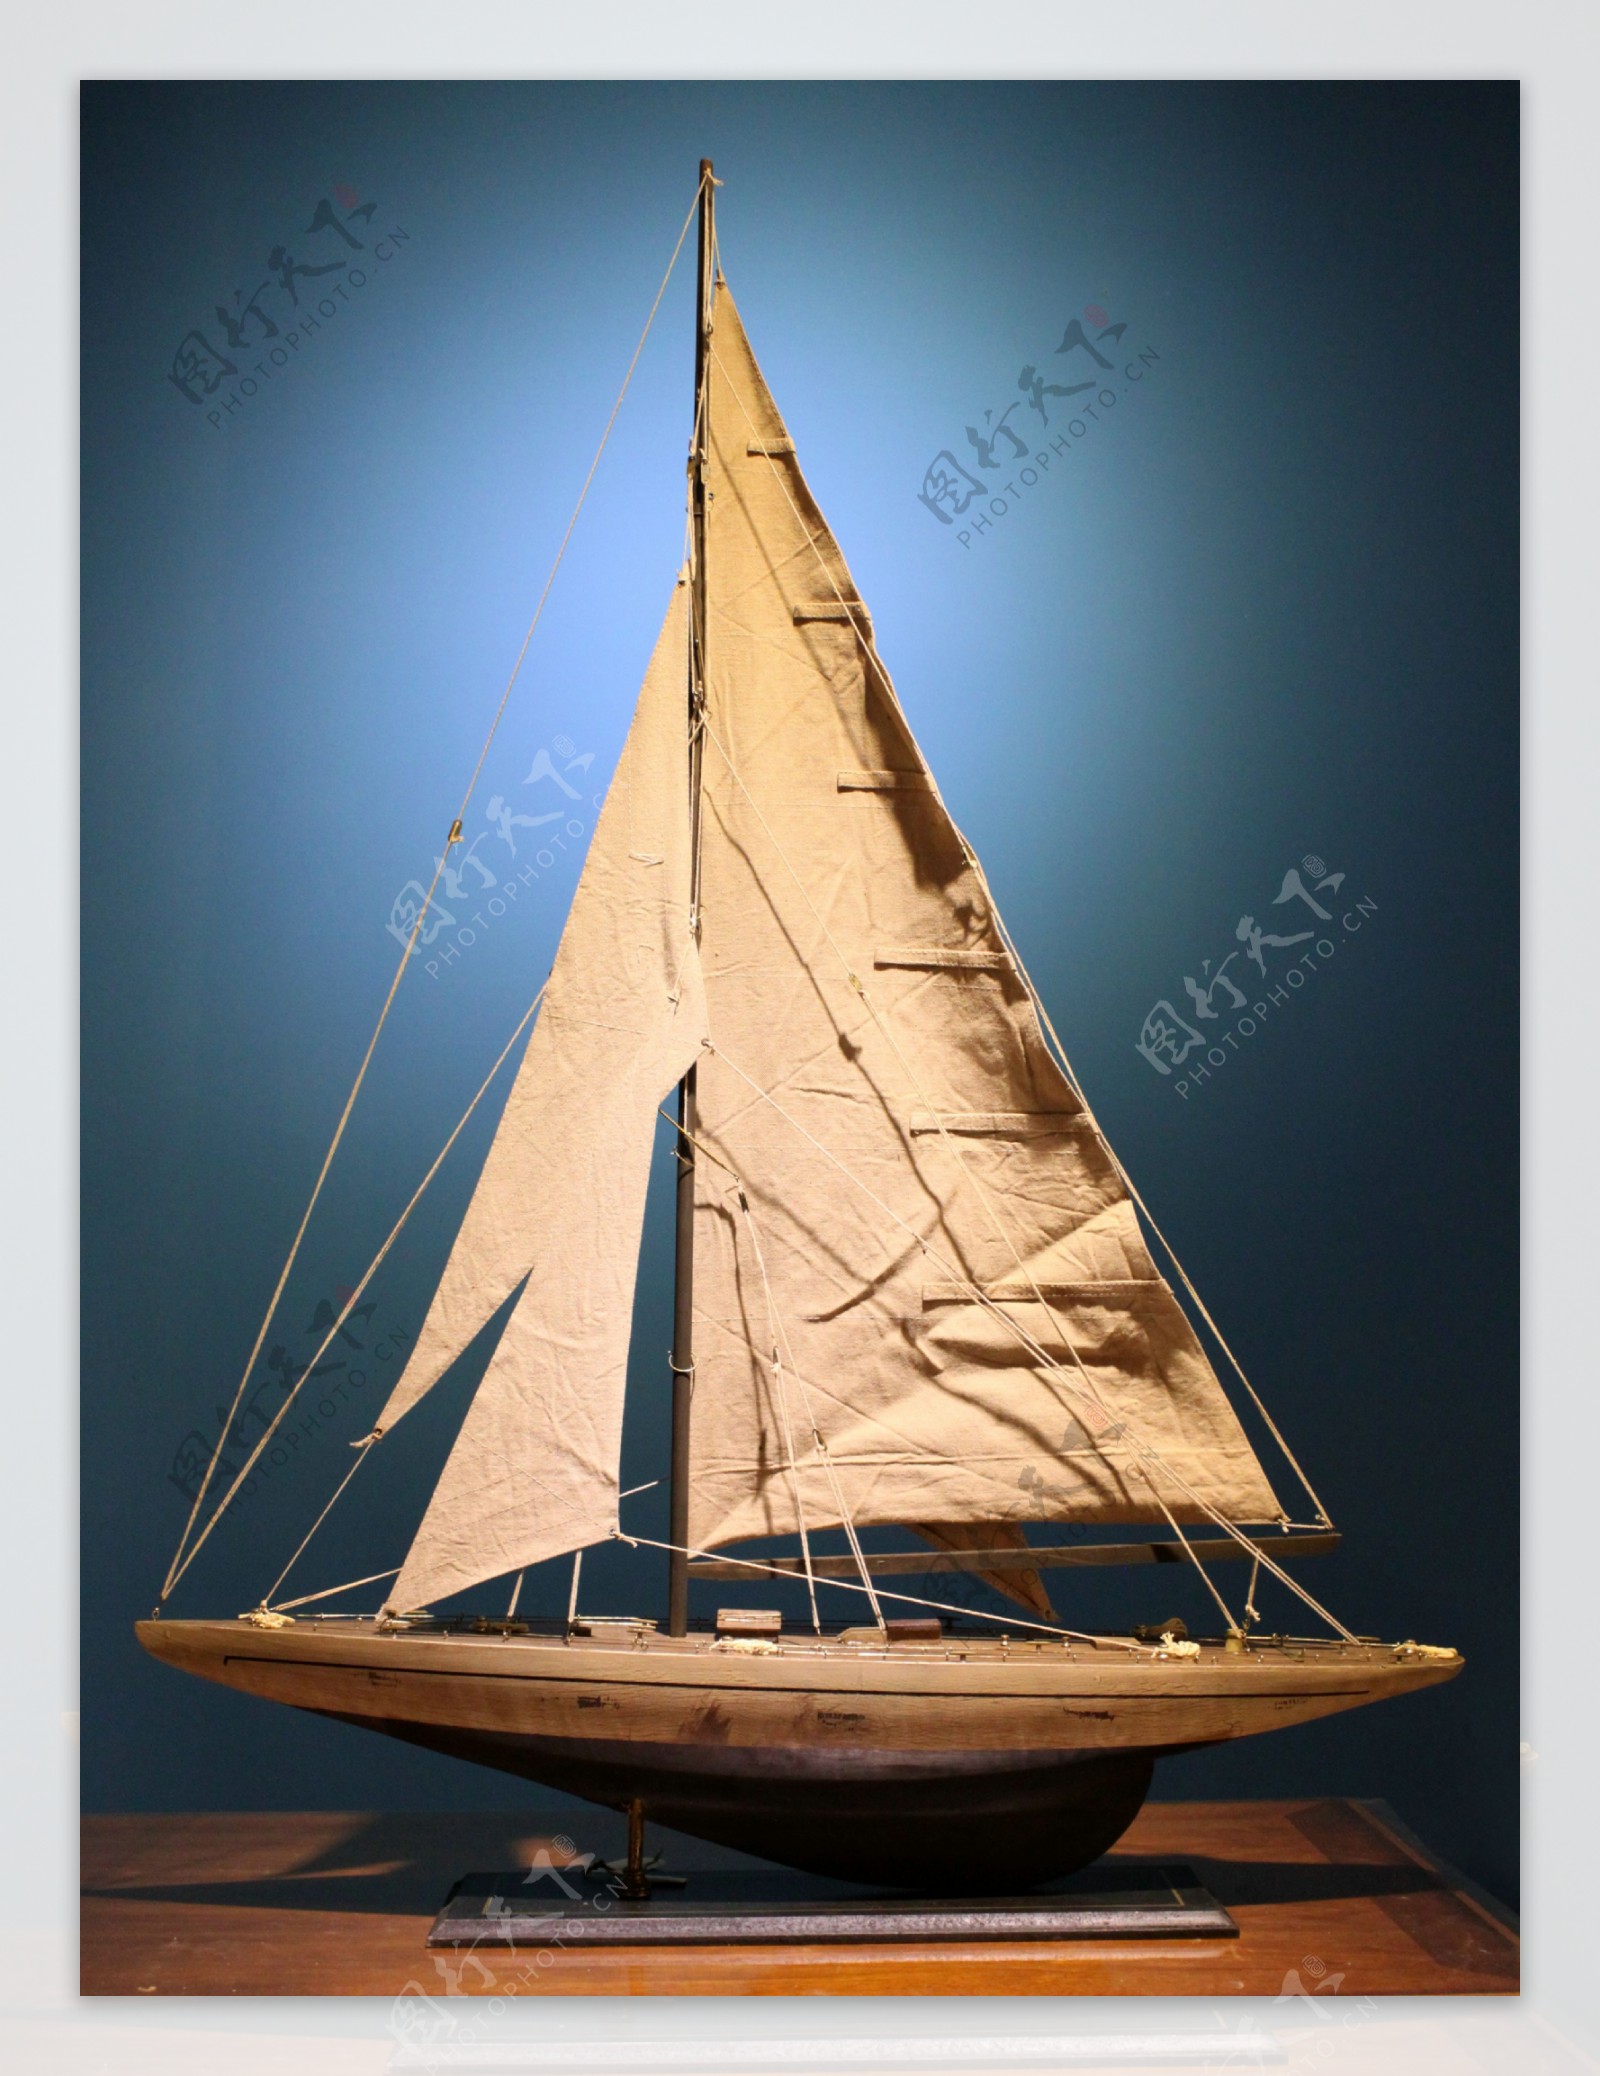 复古航海帆船模型工艺品图片